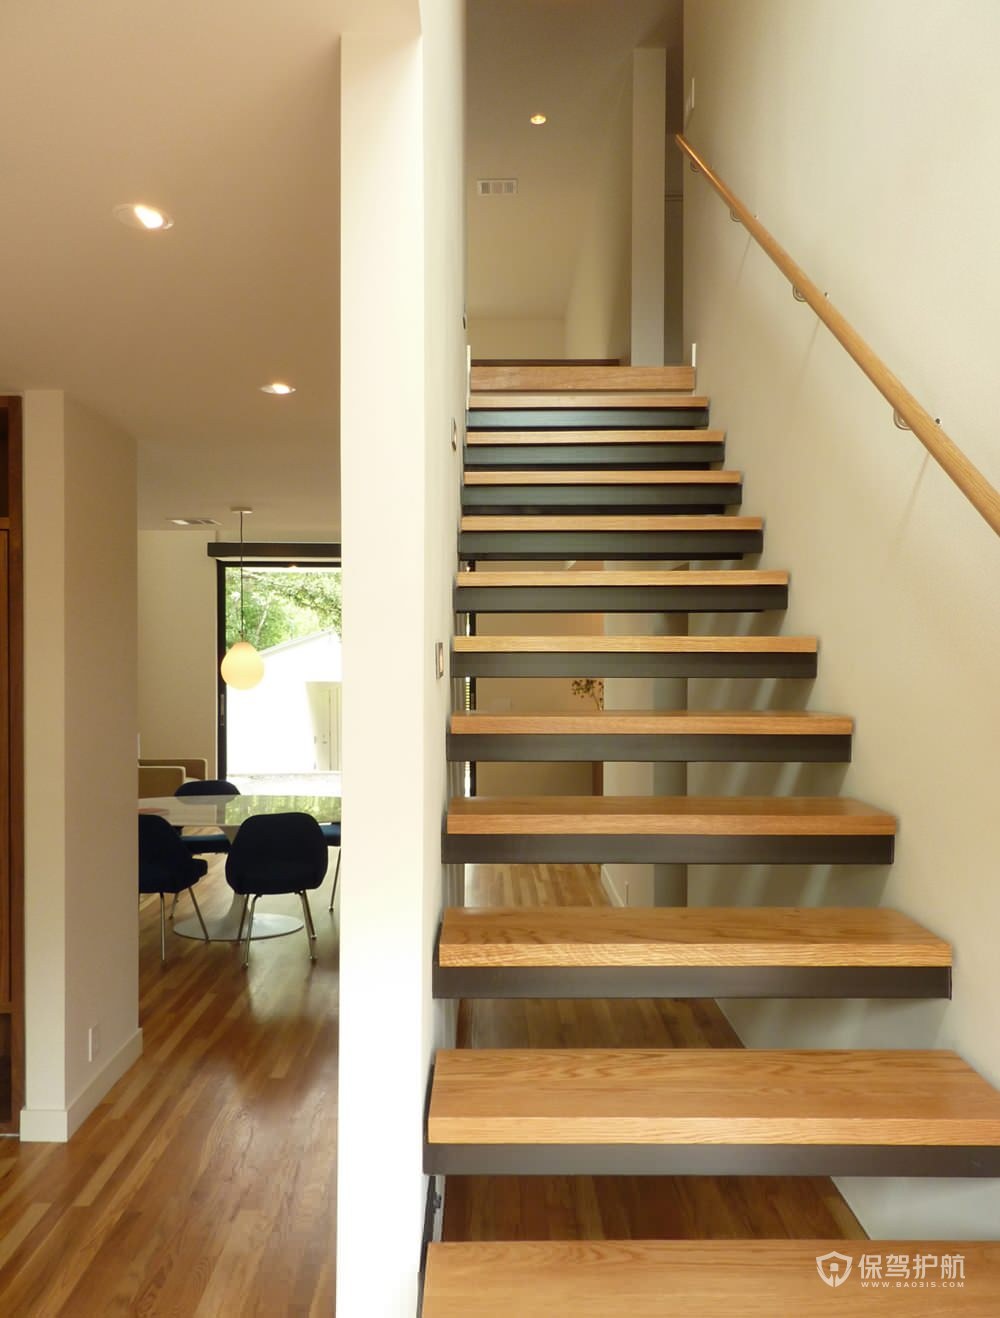 2020年最新楼梯踏步板价格楼梯踏步板尺寸多少合适